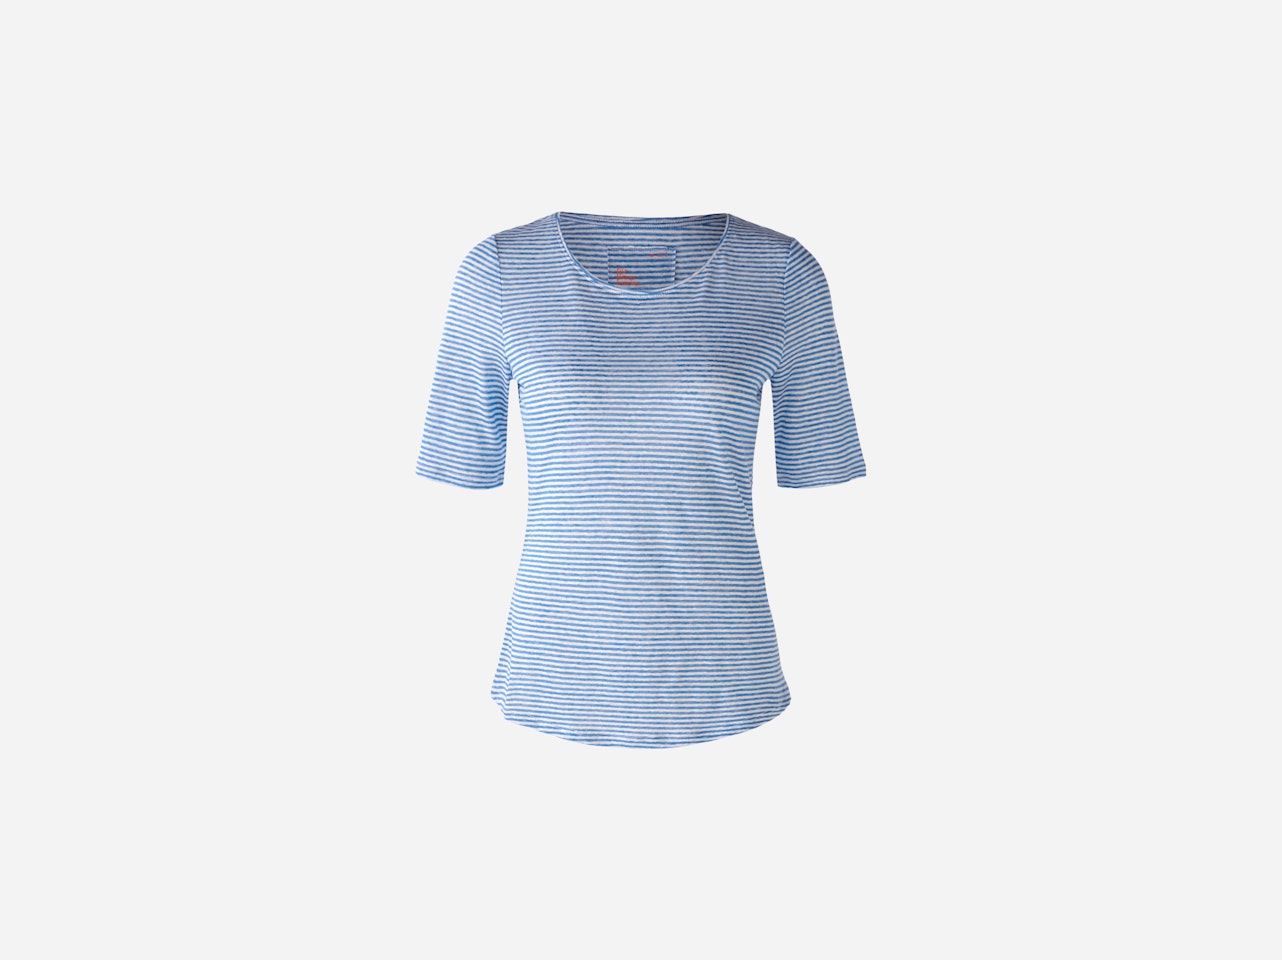 Bild 1 von T-shirt made from 100% linen in lt blue white | Oui